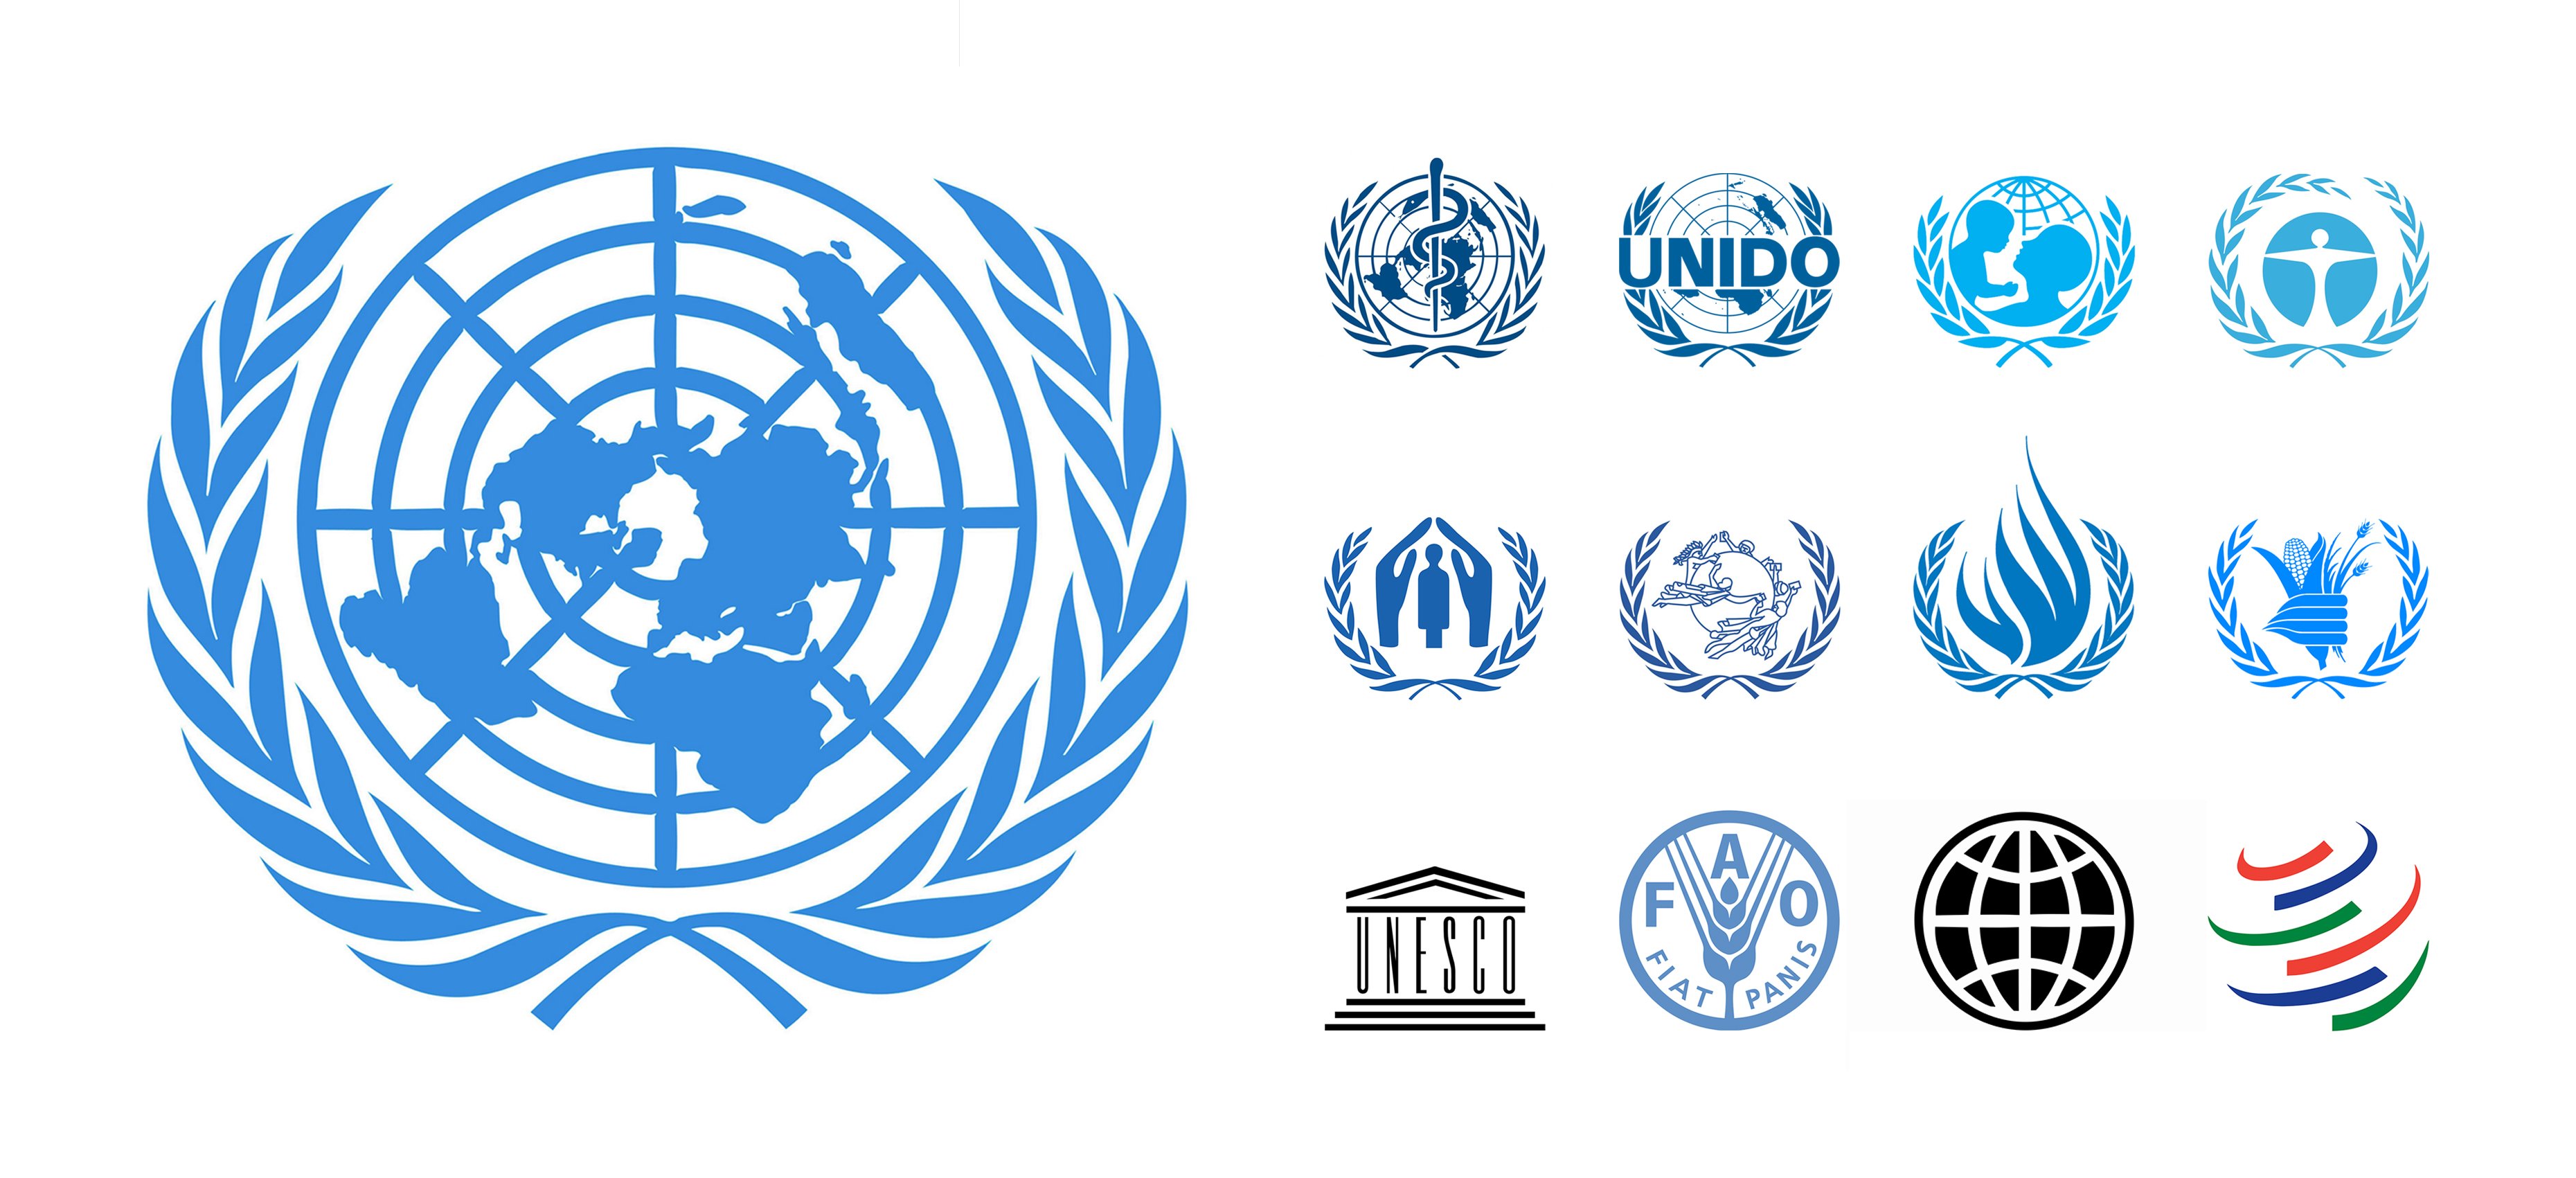 Международные организации оон. Совет безопасности ООН эмблема. Символика международных организаций. Логотипы Всемирных организаций. Эмблемы различных международных организаций.